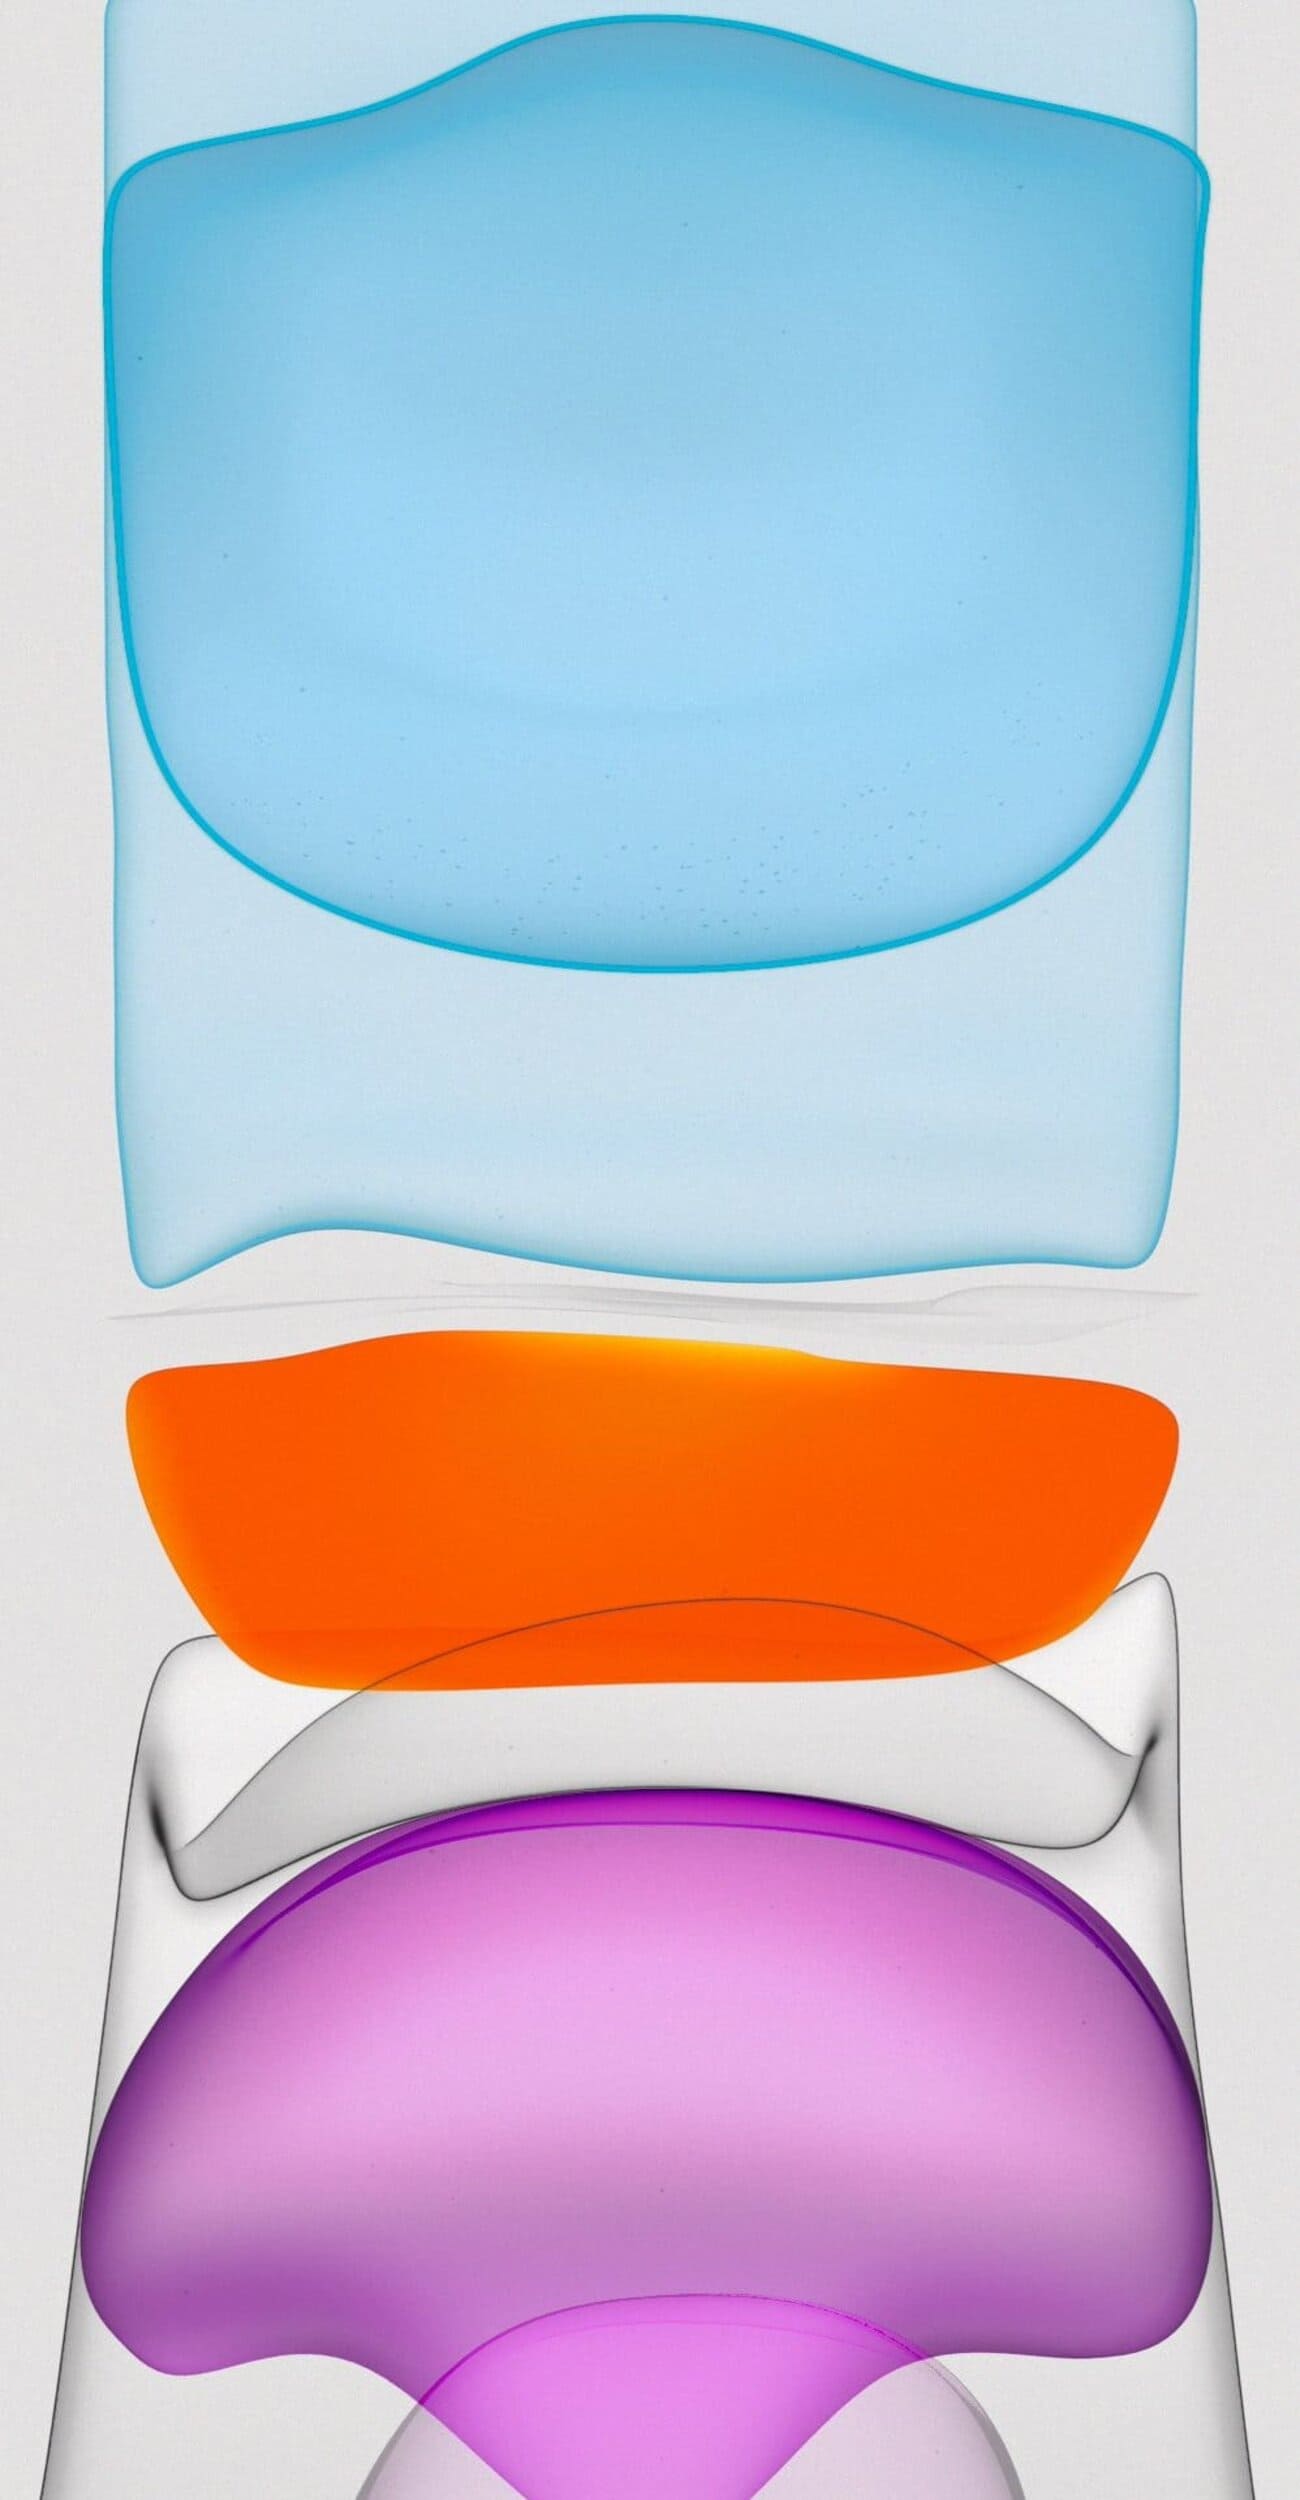 خلفية من خلفيات ايفون 11 اصلية زرقاء وبرتقالية وبنفسجية بجودة HD